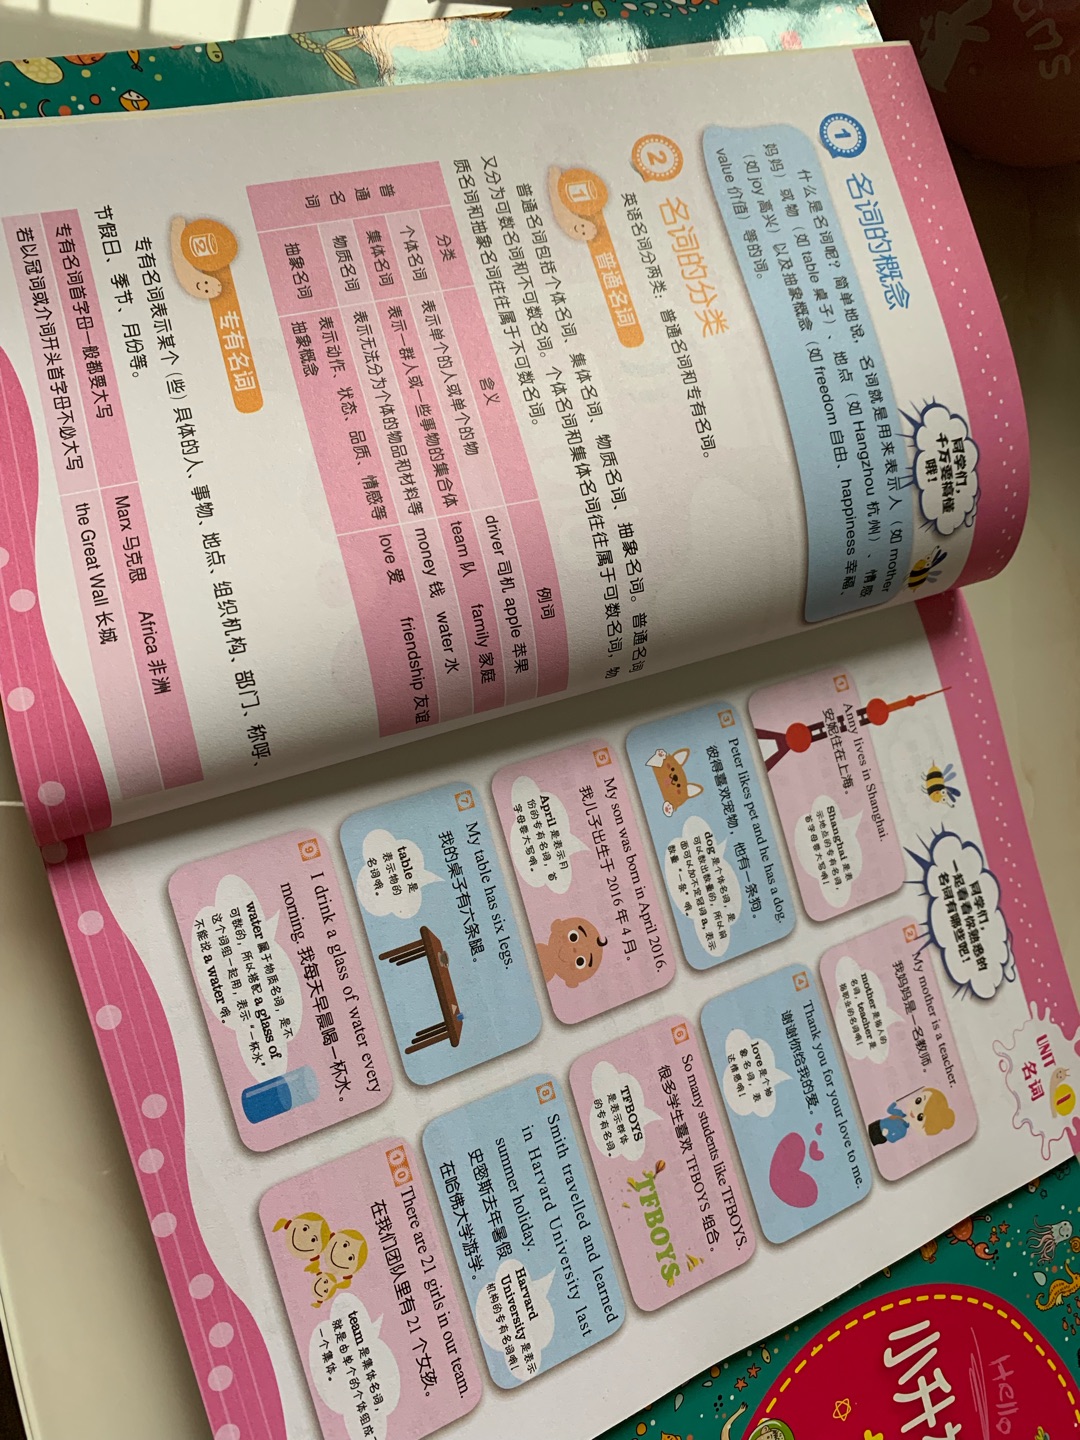 买来给六年级孩子补语法的教辅书，除了知识点归纳讲解，还有针对性练习，而且全书用不同颜色区别不同内容，孩子看了很喜欢，很能吸引孩子注意力。